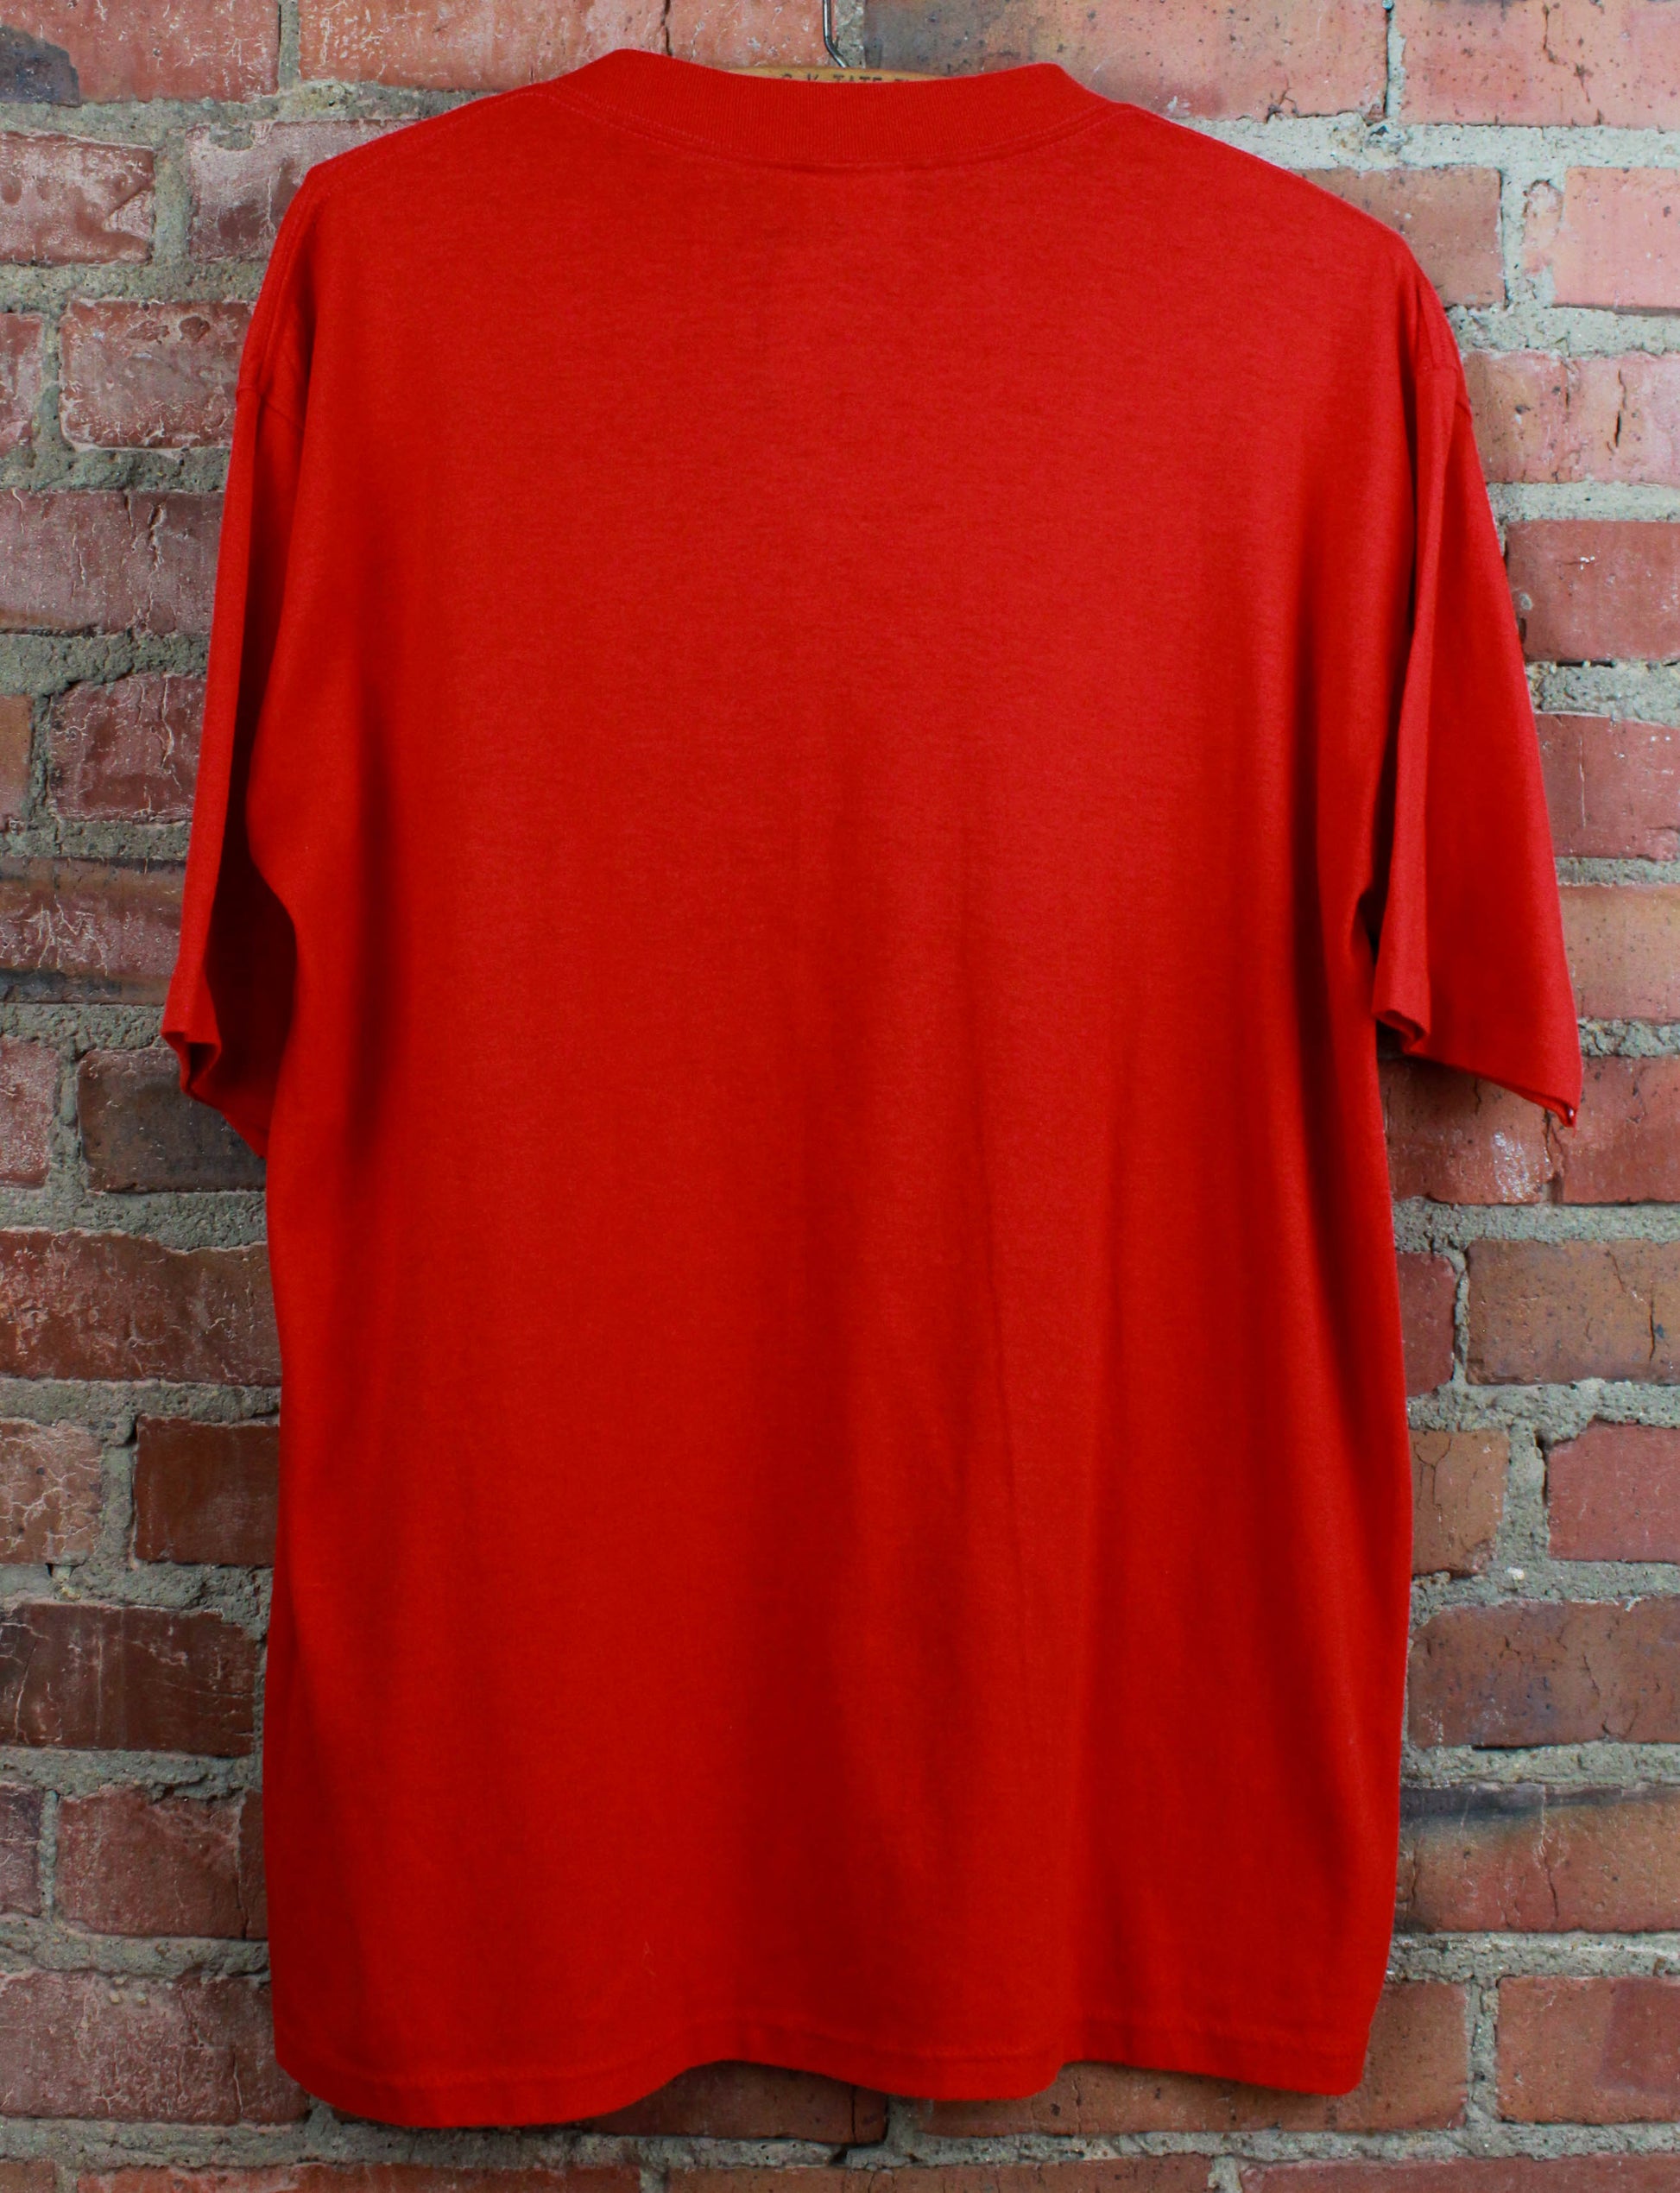 Vintage 90's Tuff Duck Graphic T Shirt Nebraska Red Unisex XL